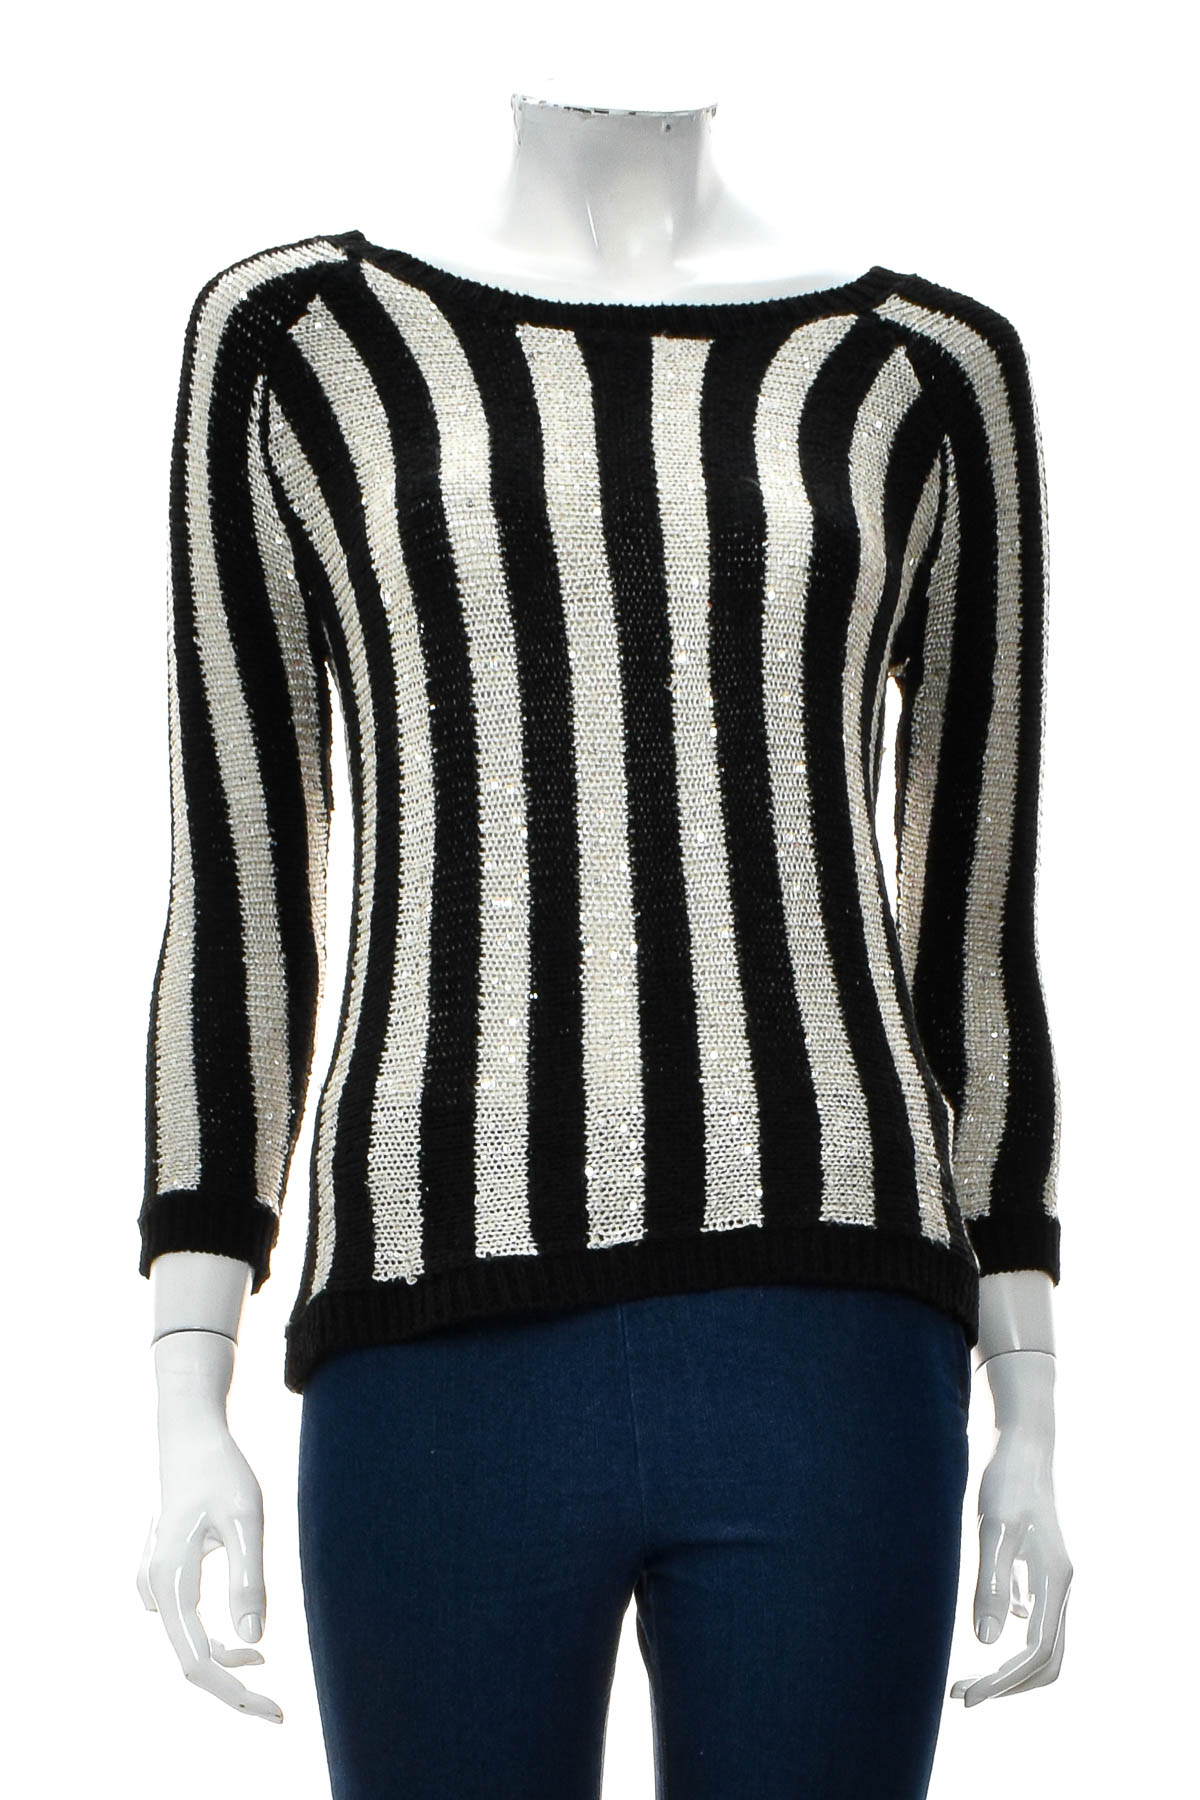 Women's sweater - Suzy Shier - 0